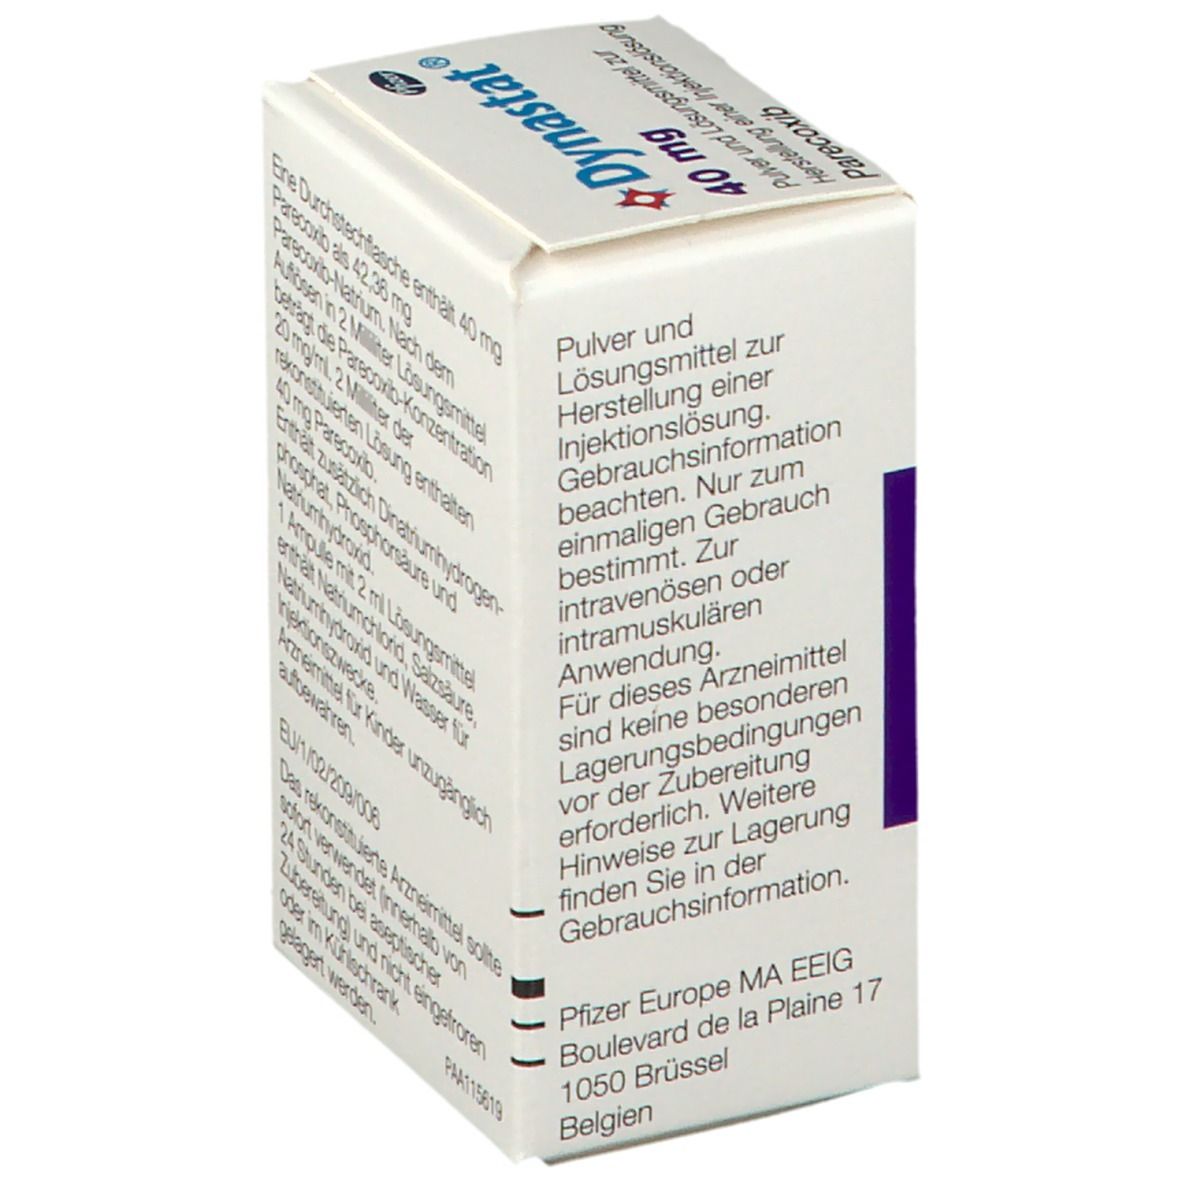 Dynastat® 40 mg